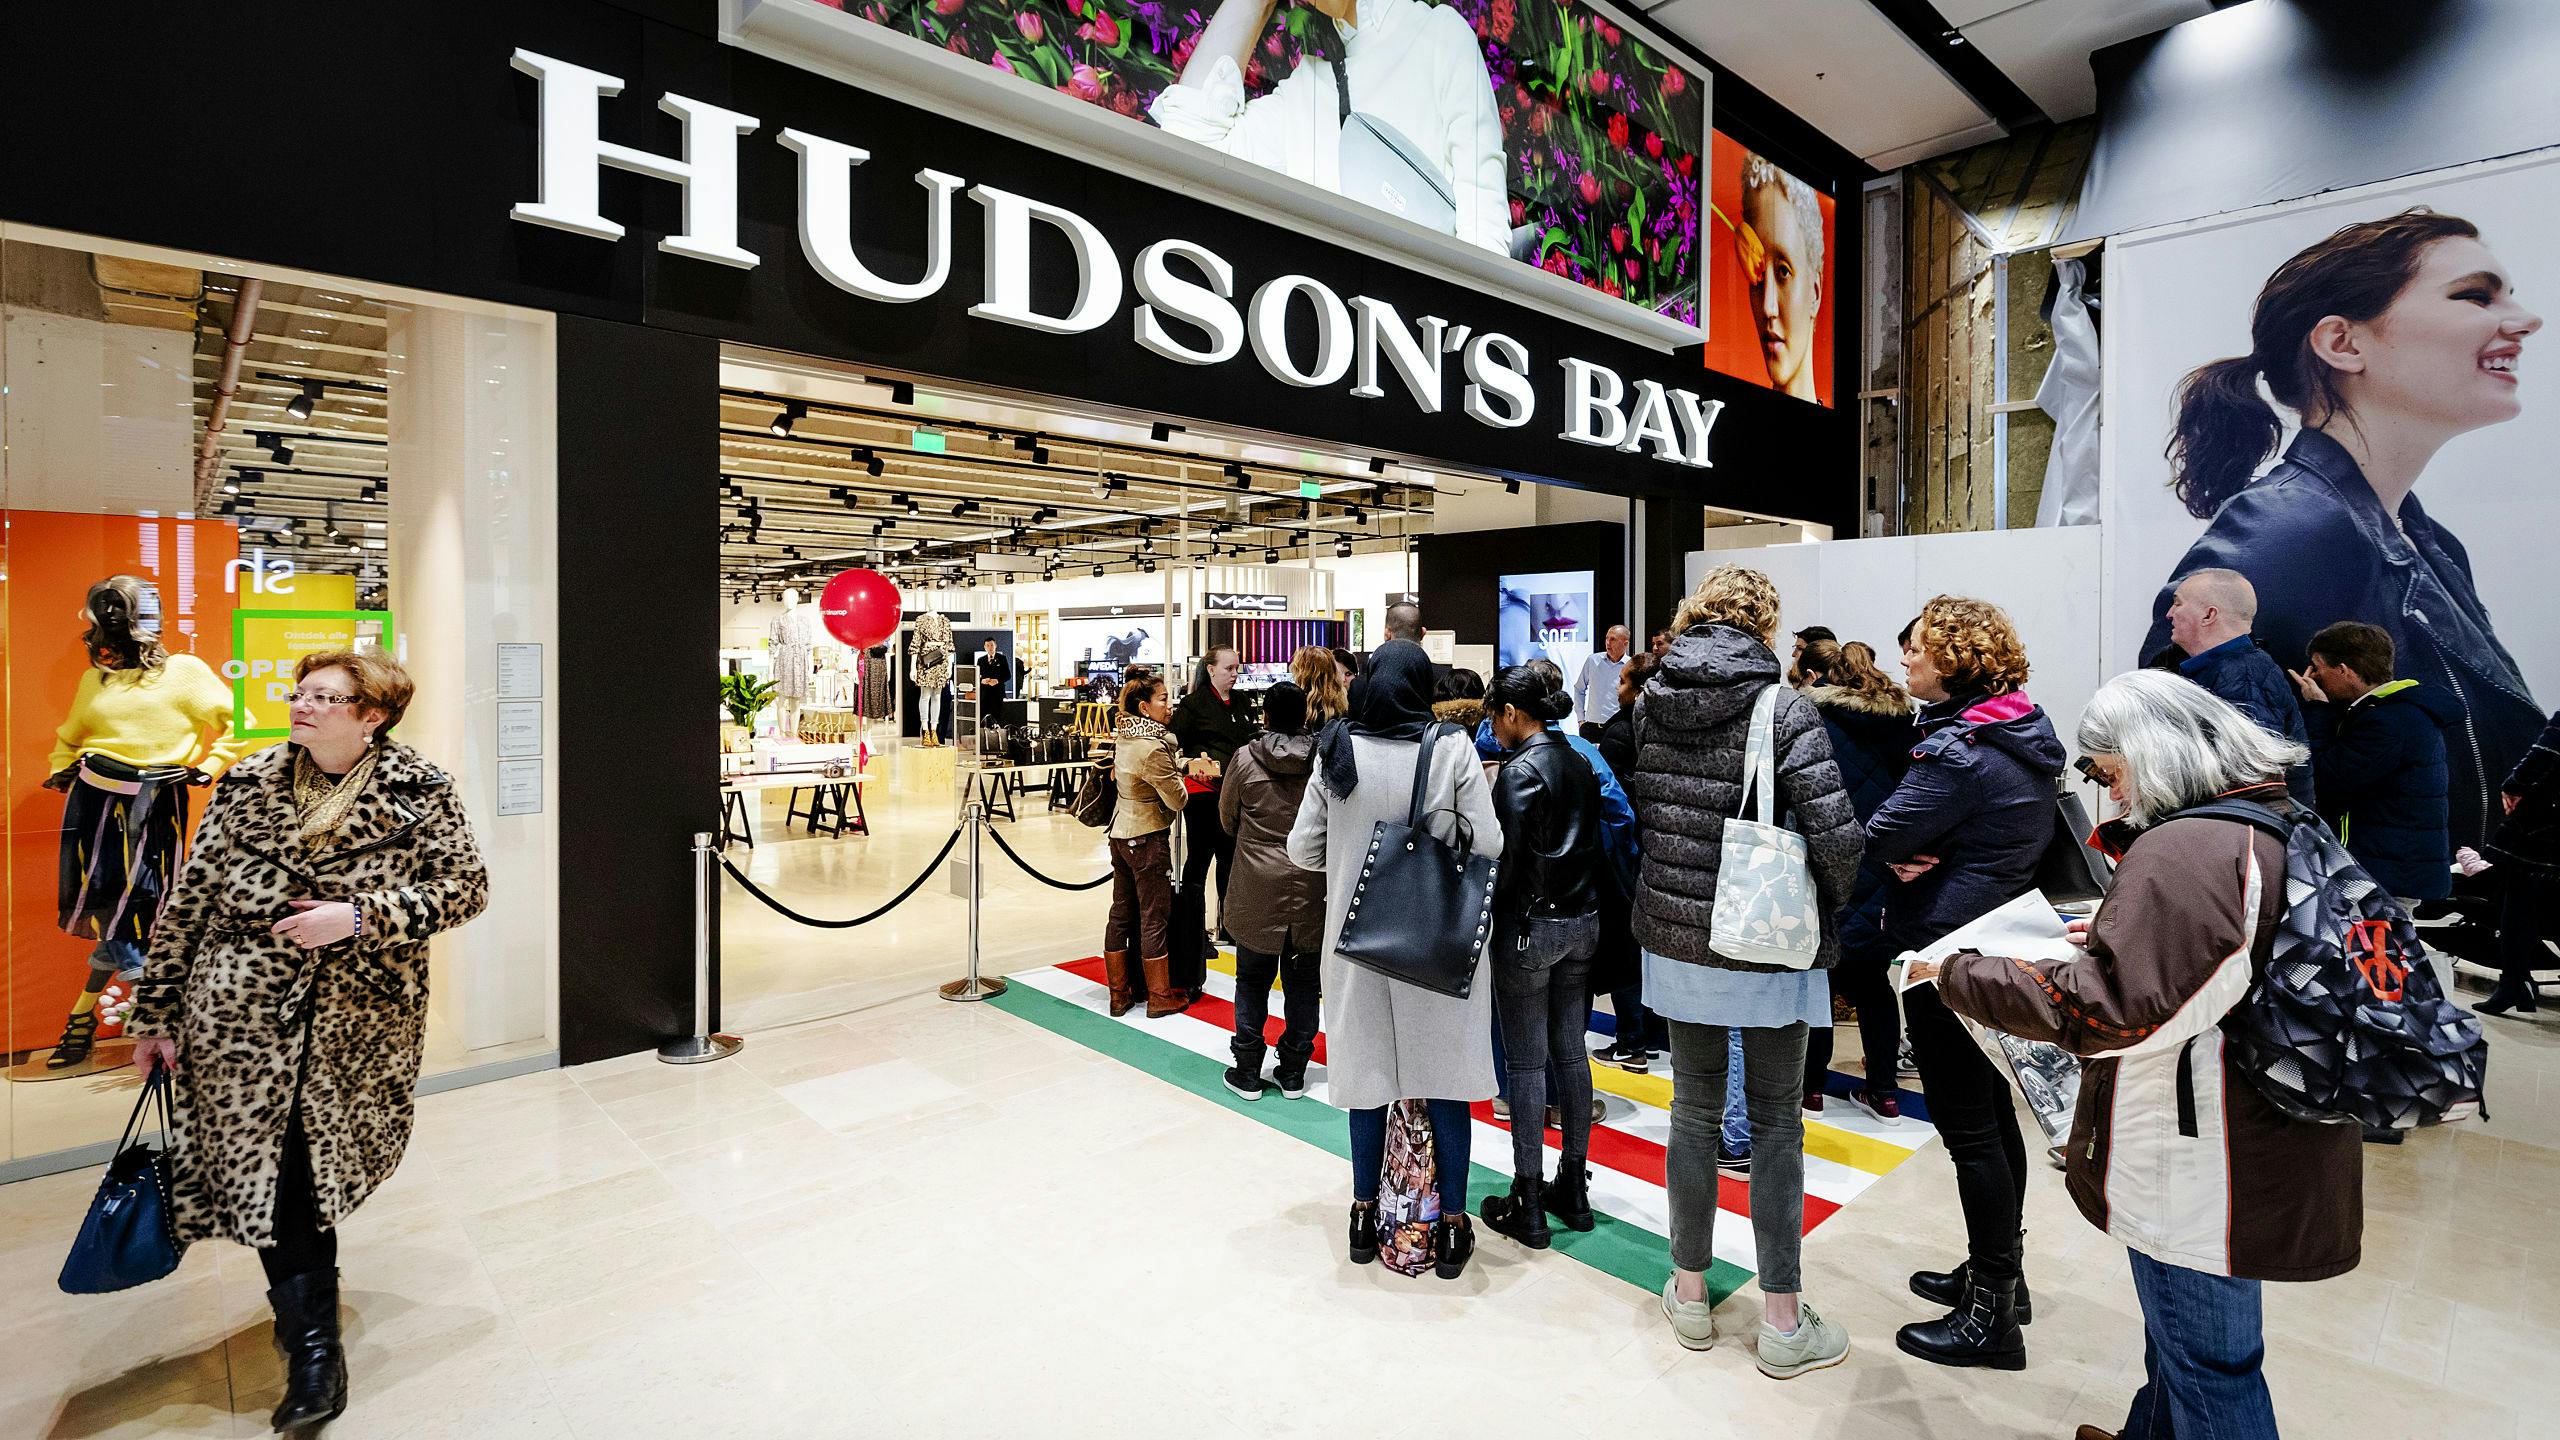 Mensen staan in de rij tijdens de opening van het warenhuis Hudson's Bay in Hoog Catharijne in Utrecht.